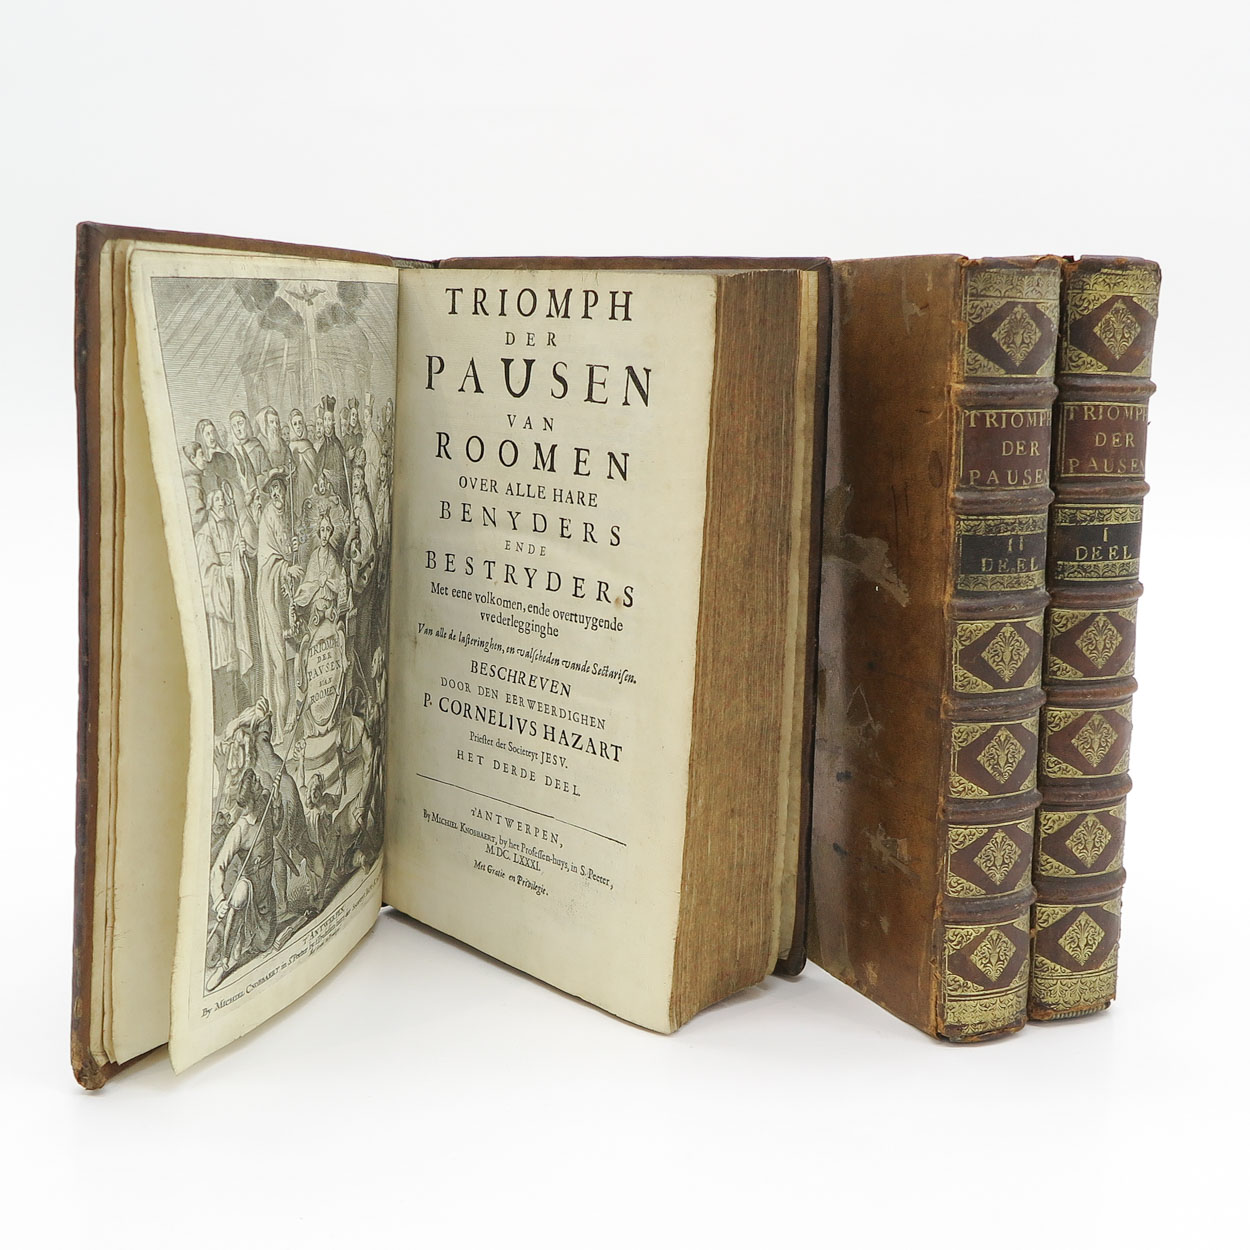 Series of Triomph der Pausen van Roomen Books 1681